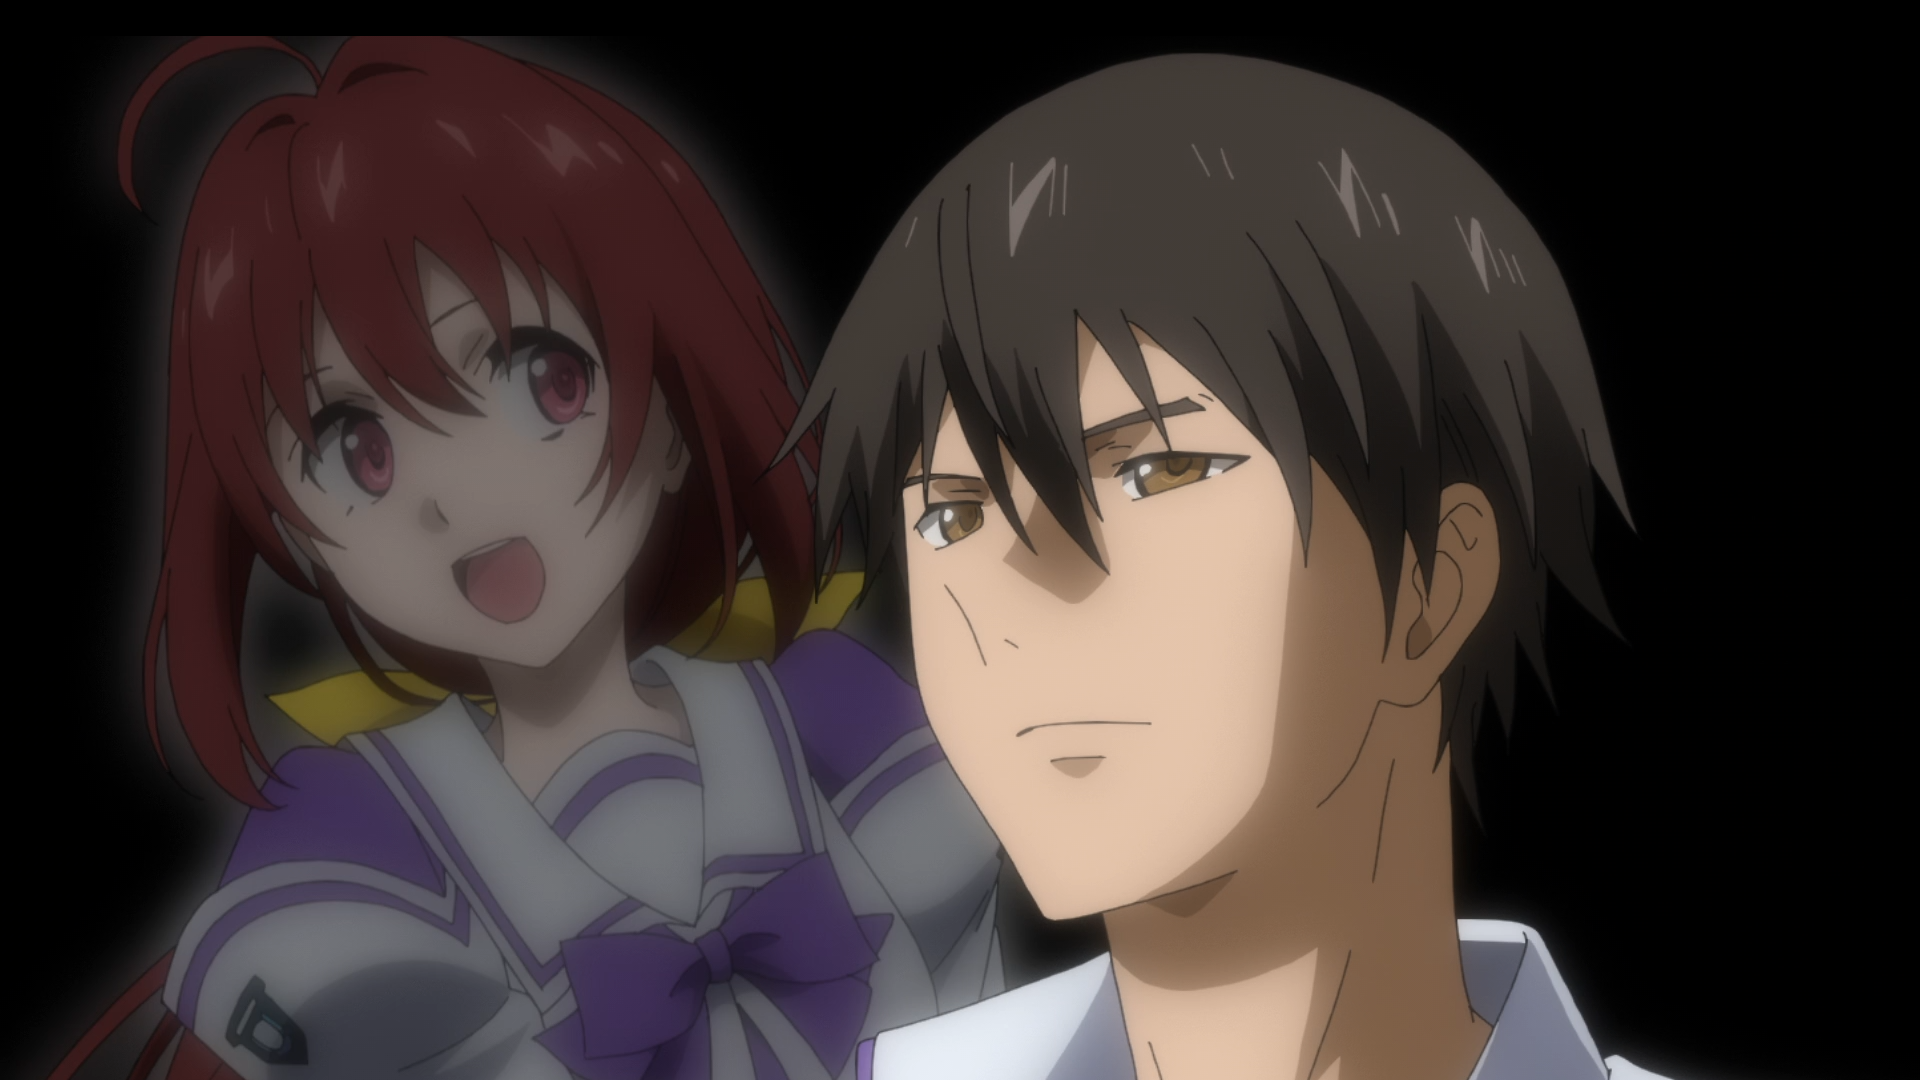 Spoilers] Kyoukai No Kanata Rewatch - Episode 1 (Discussion) : r/anime